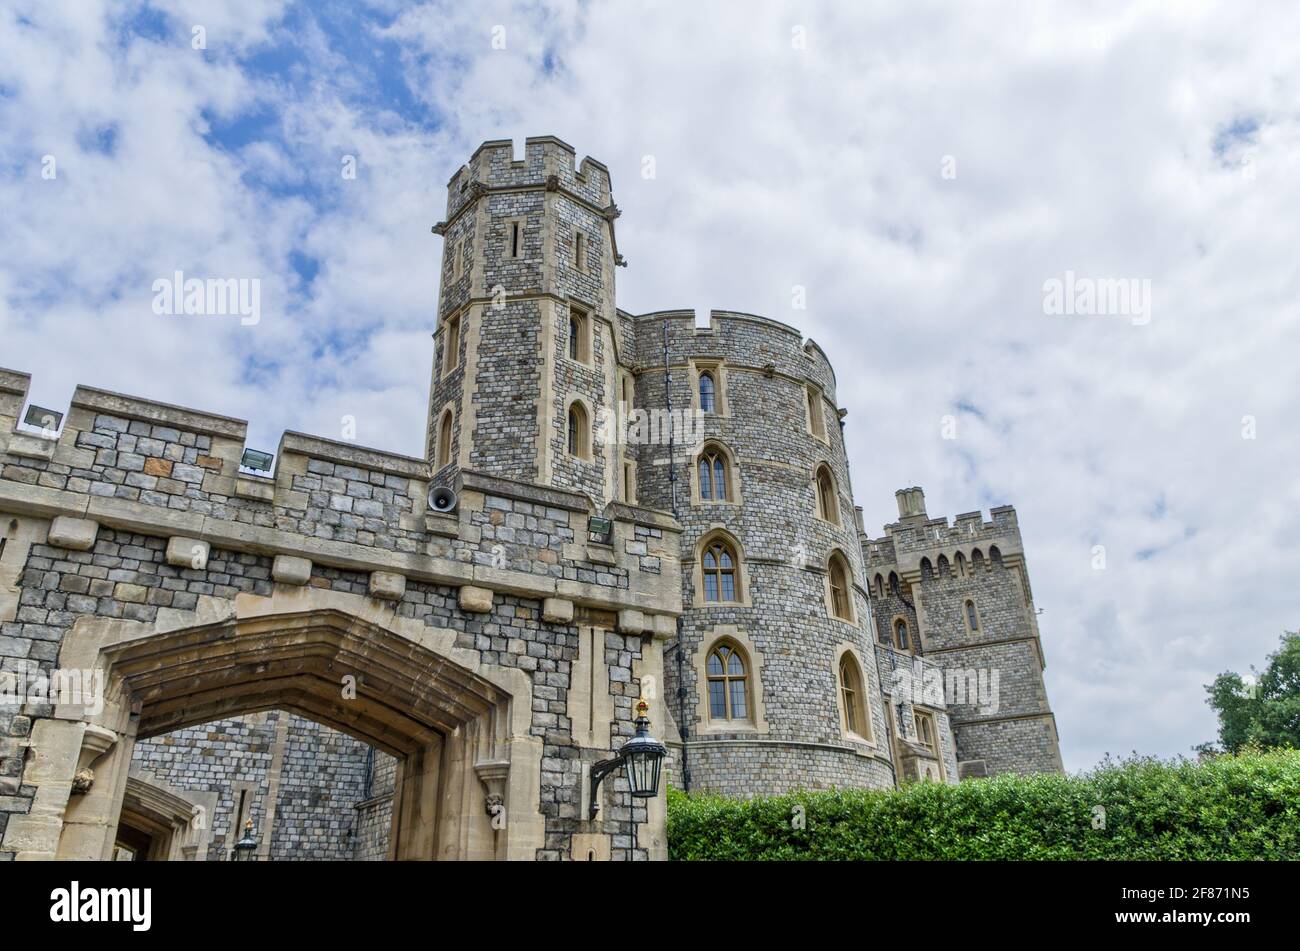 Die königliche Residenz von Windsor Castle, Bergland, Großbritannien; Blick auf den King Edward III Tower. Stockfoto